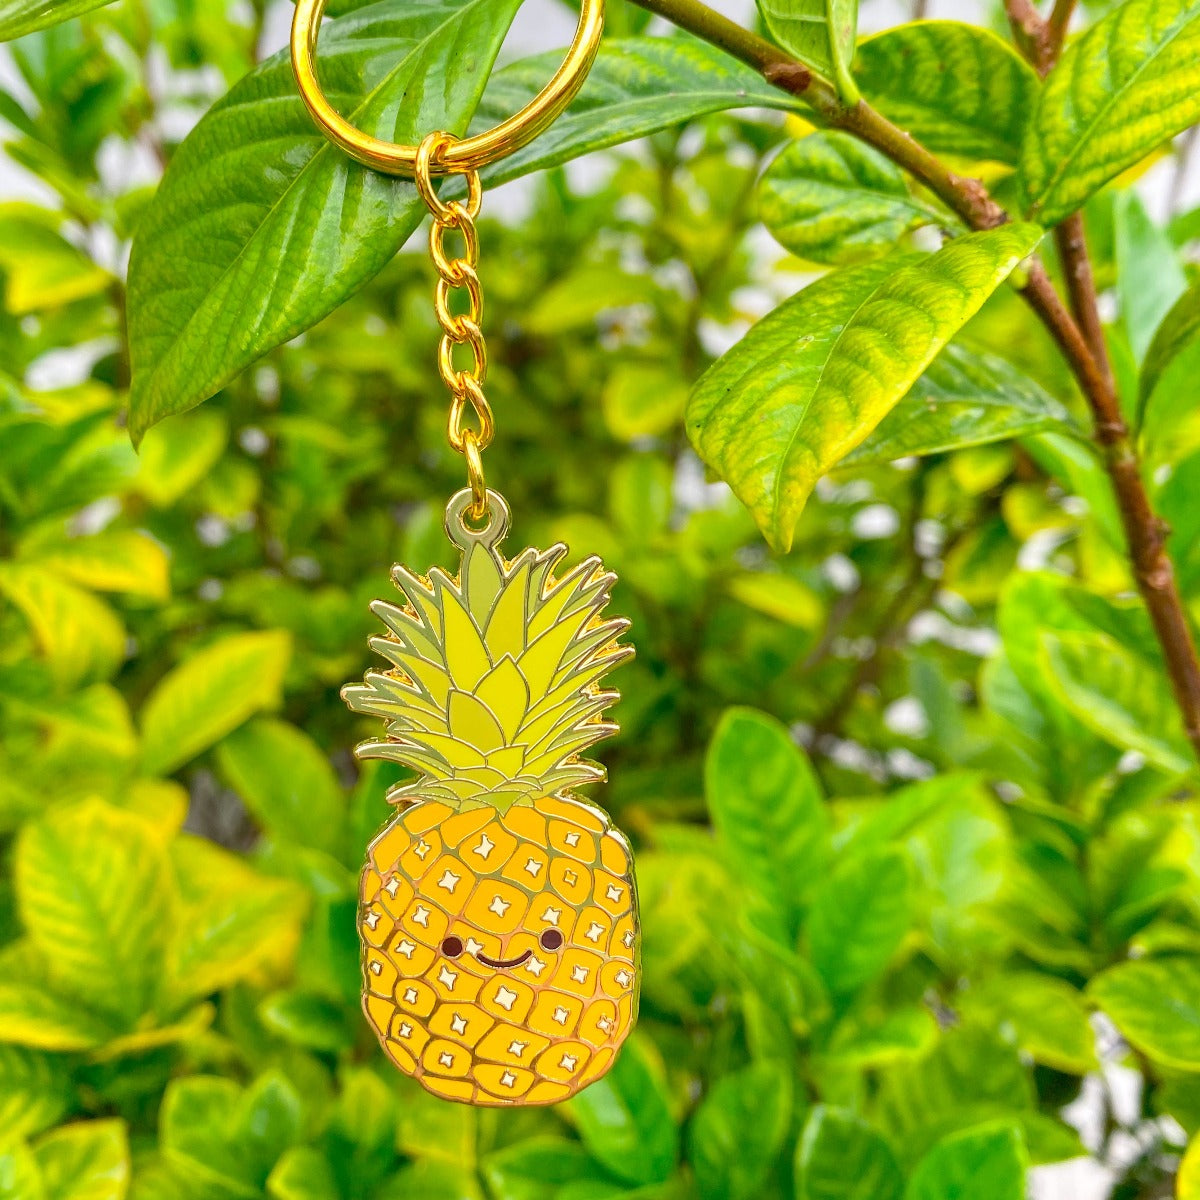 Keychain, Cute Keychain, Cute Keychain for Car Keys, Keychain for Women, Keychain Cute, Key Chain, Cute Gifts for Women, Gifts for Women, hawaiian plants, hawaiian gifts, plant parent, plant lover, aloha, aloha gift, pineapple, pineapple gift, pineapple gifts